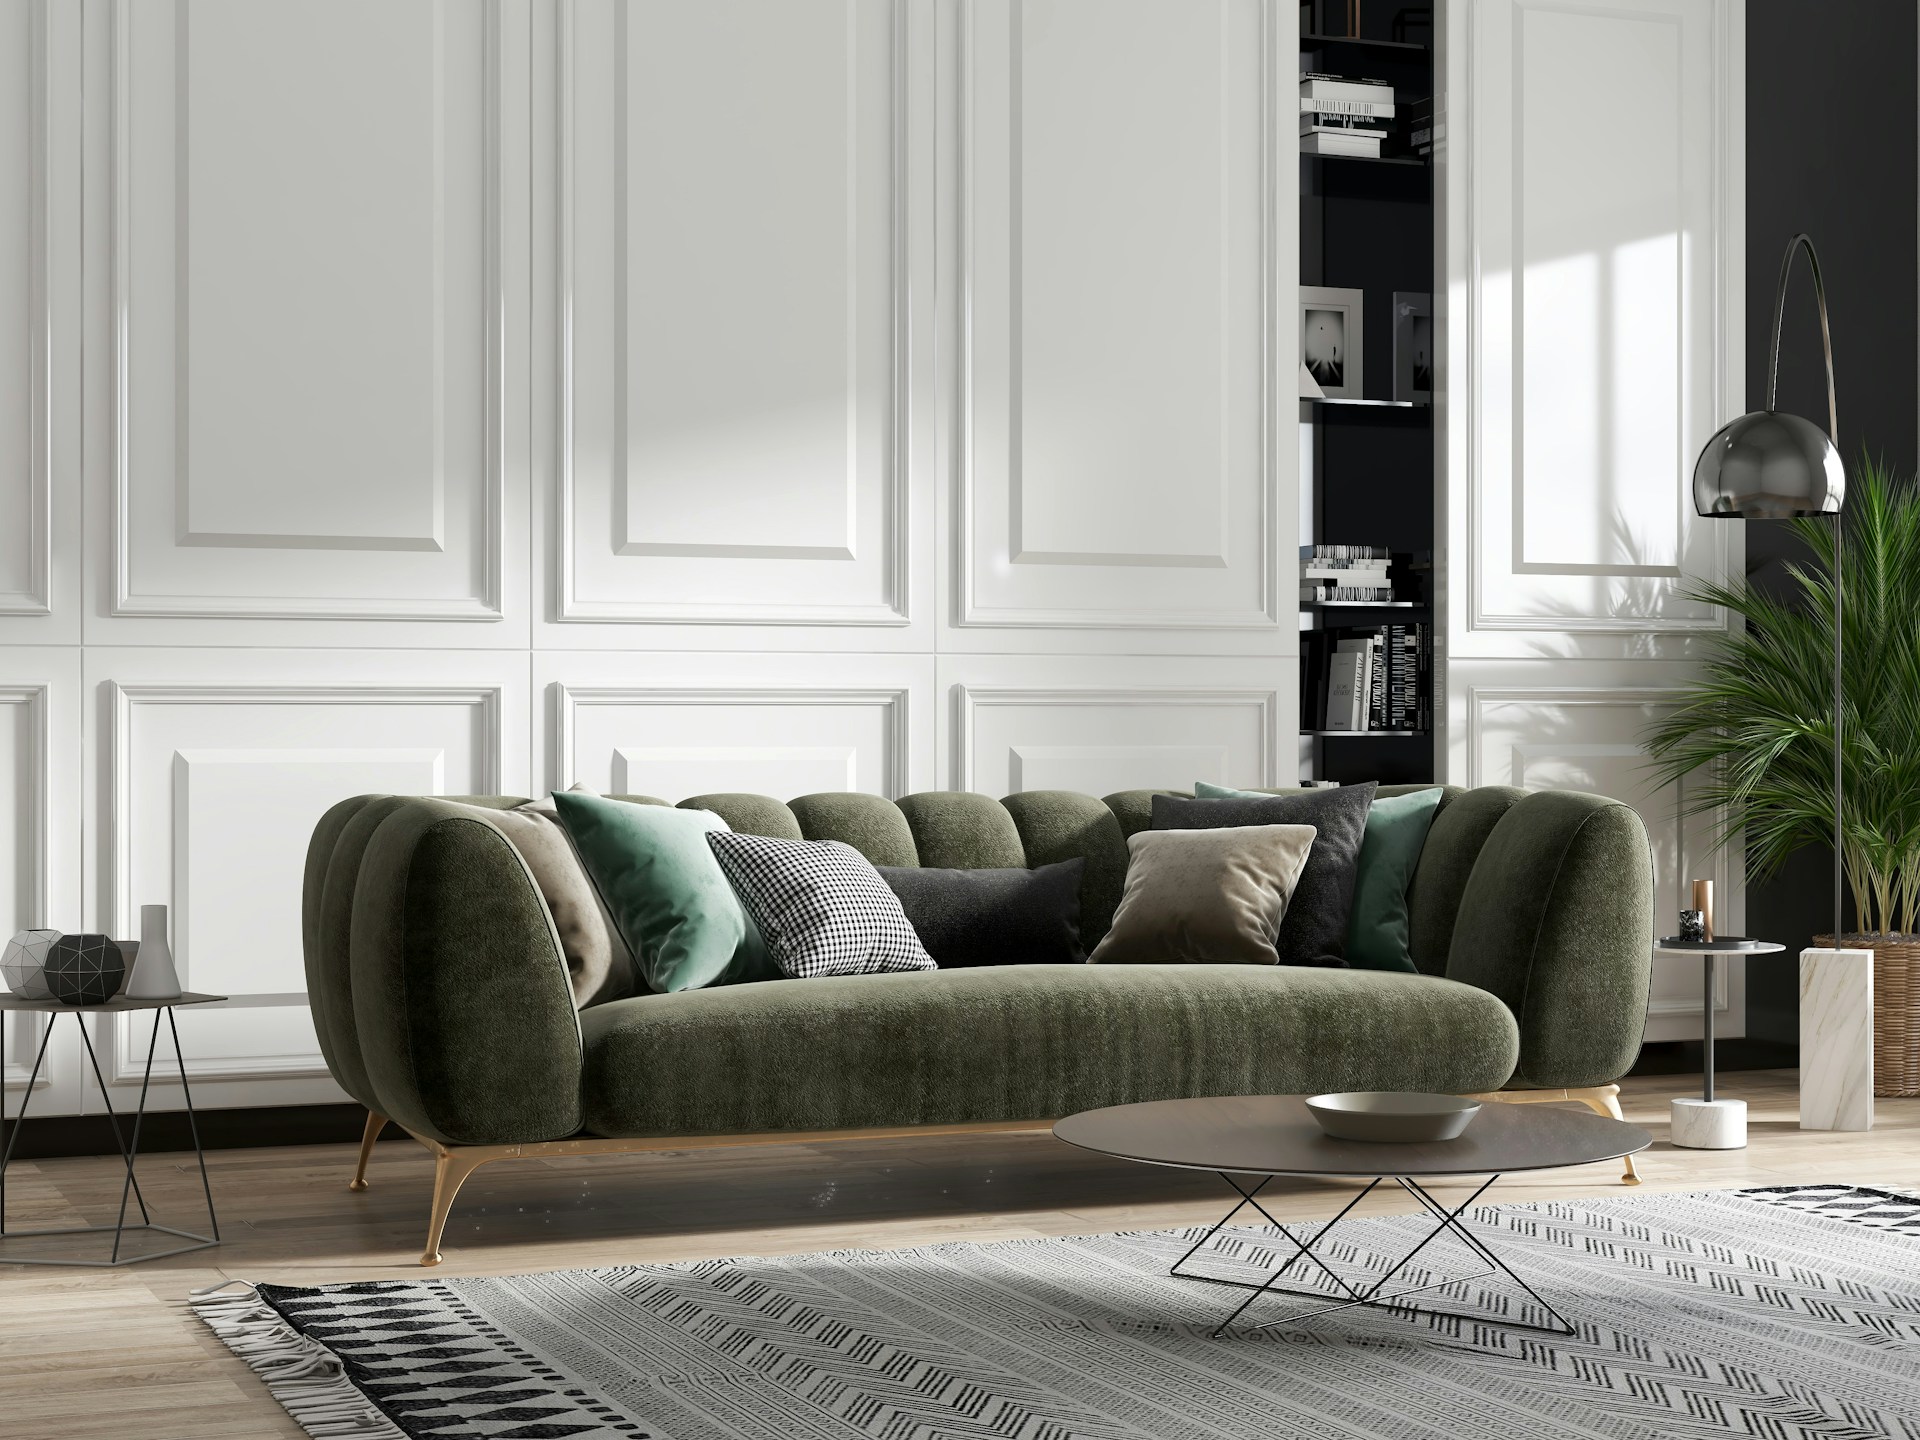 modern livingroom